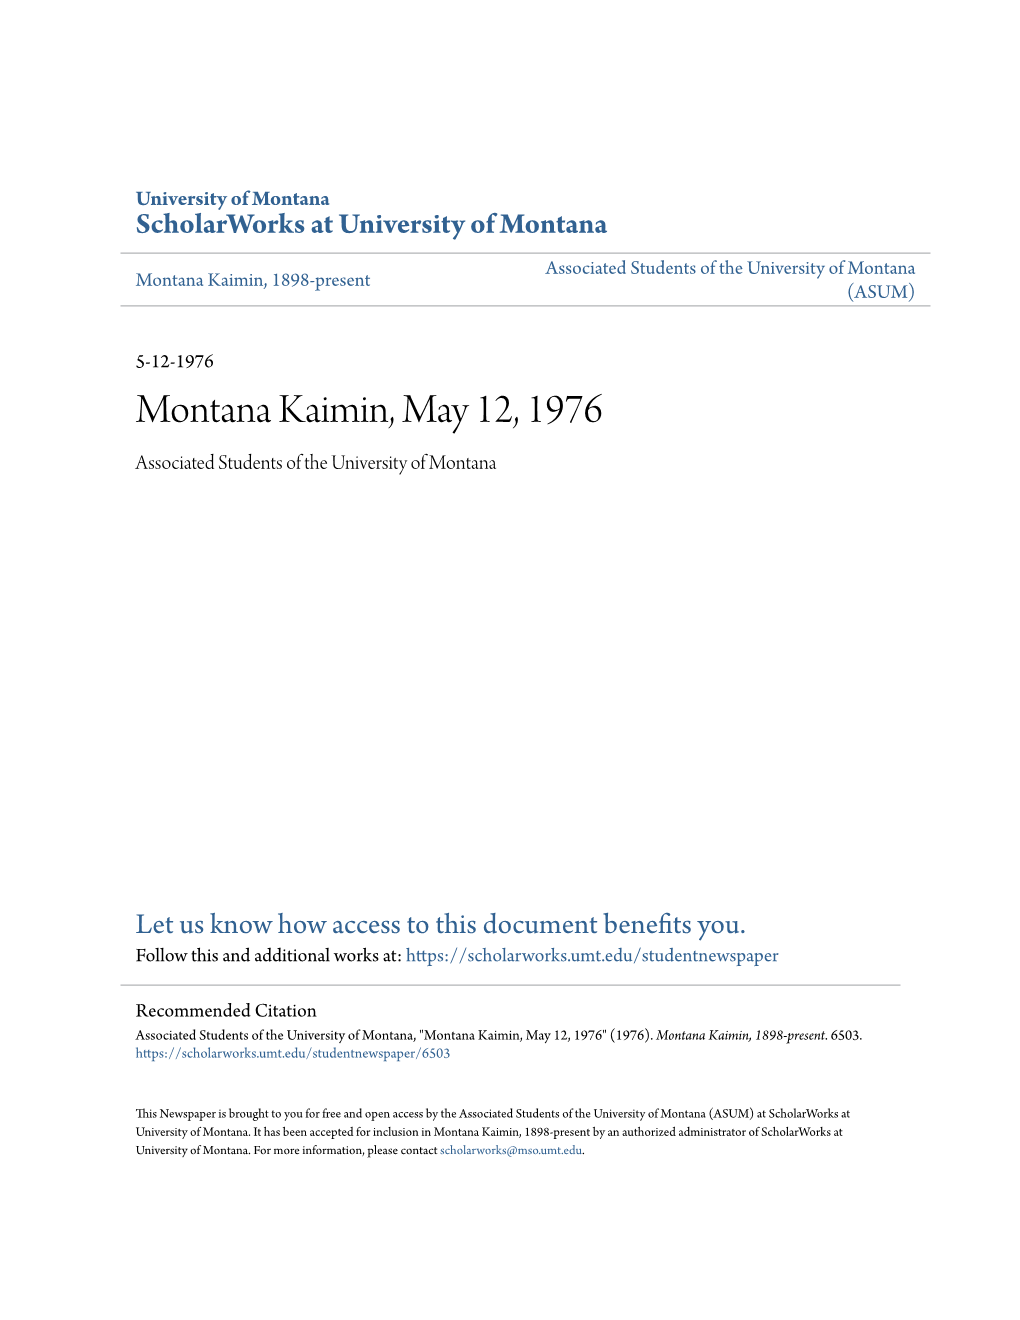 Montana Kaimin, May 12, 1976 Associated Students of the University of Montana